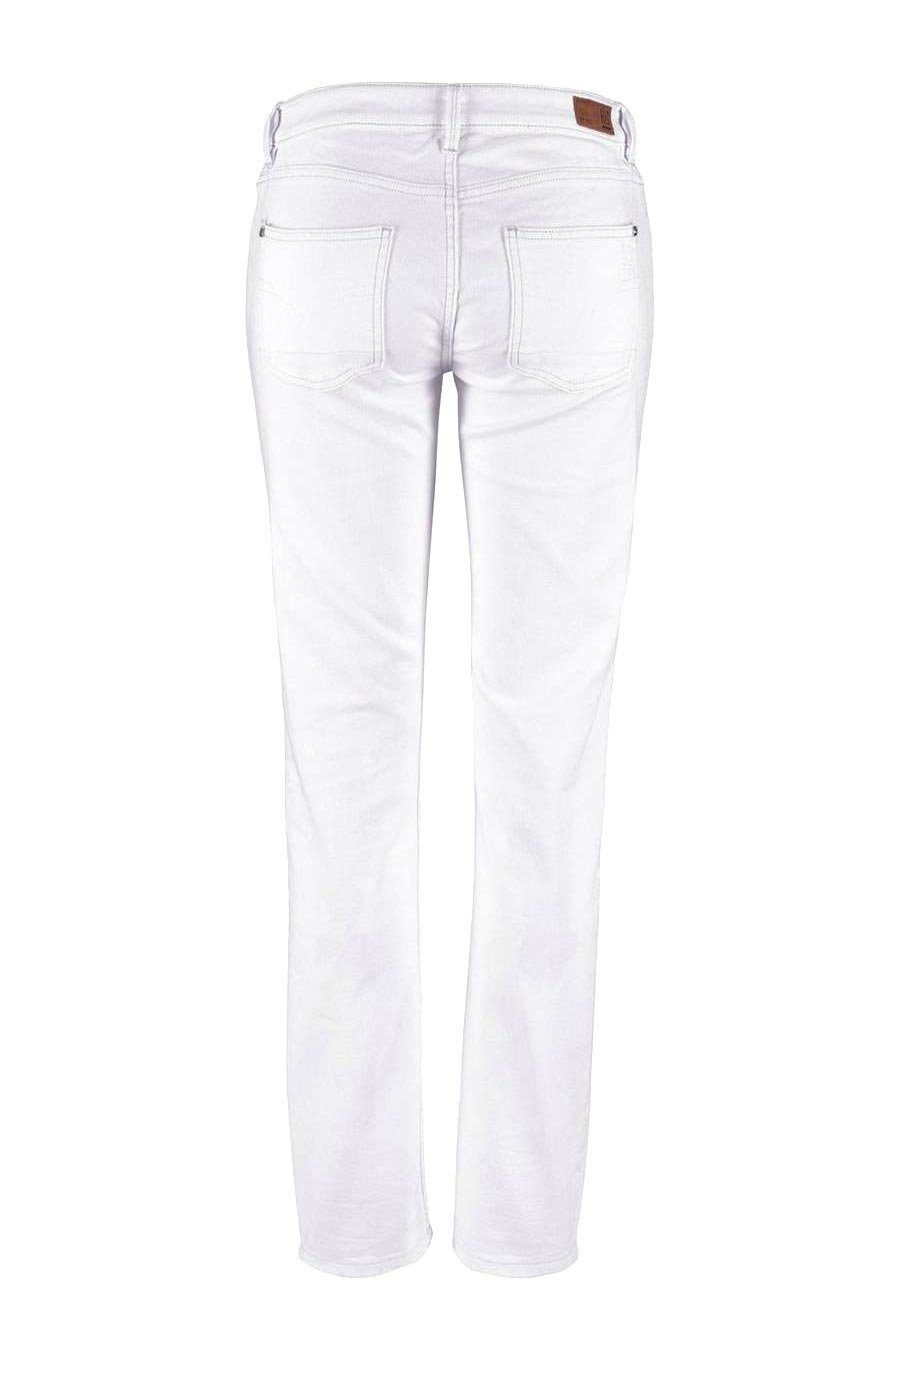 H.I.S Röhrenjeans »H.i.s. Damen Marken-Jeans "MONROE" mit Stickerei, weiß,  33 inch« online kaufen | OTTO